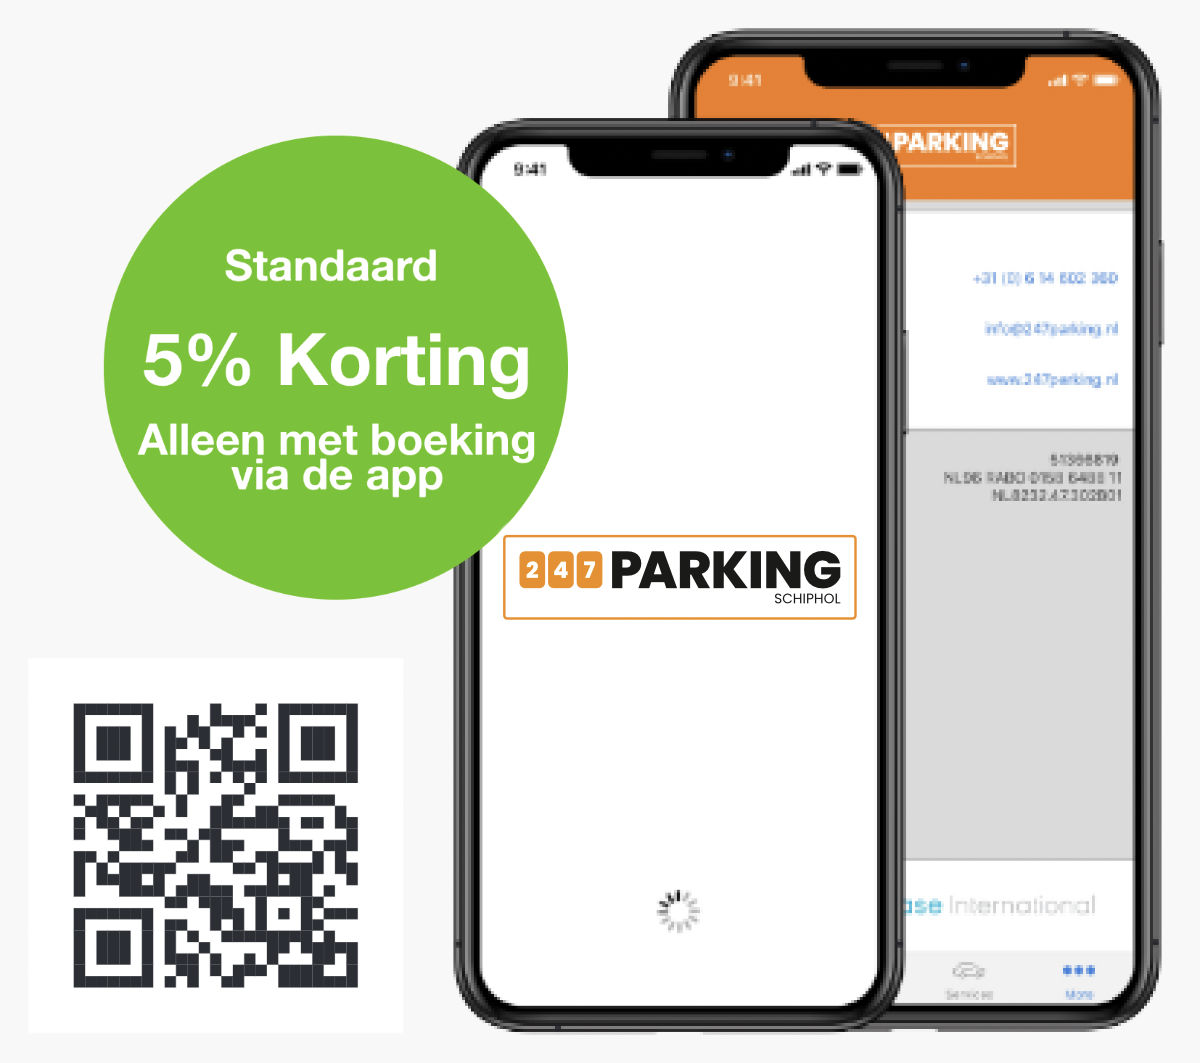 De 247 Parking app